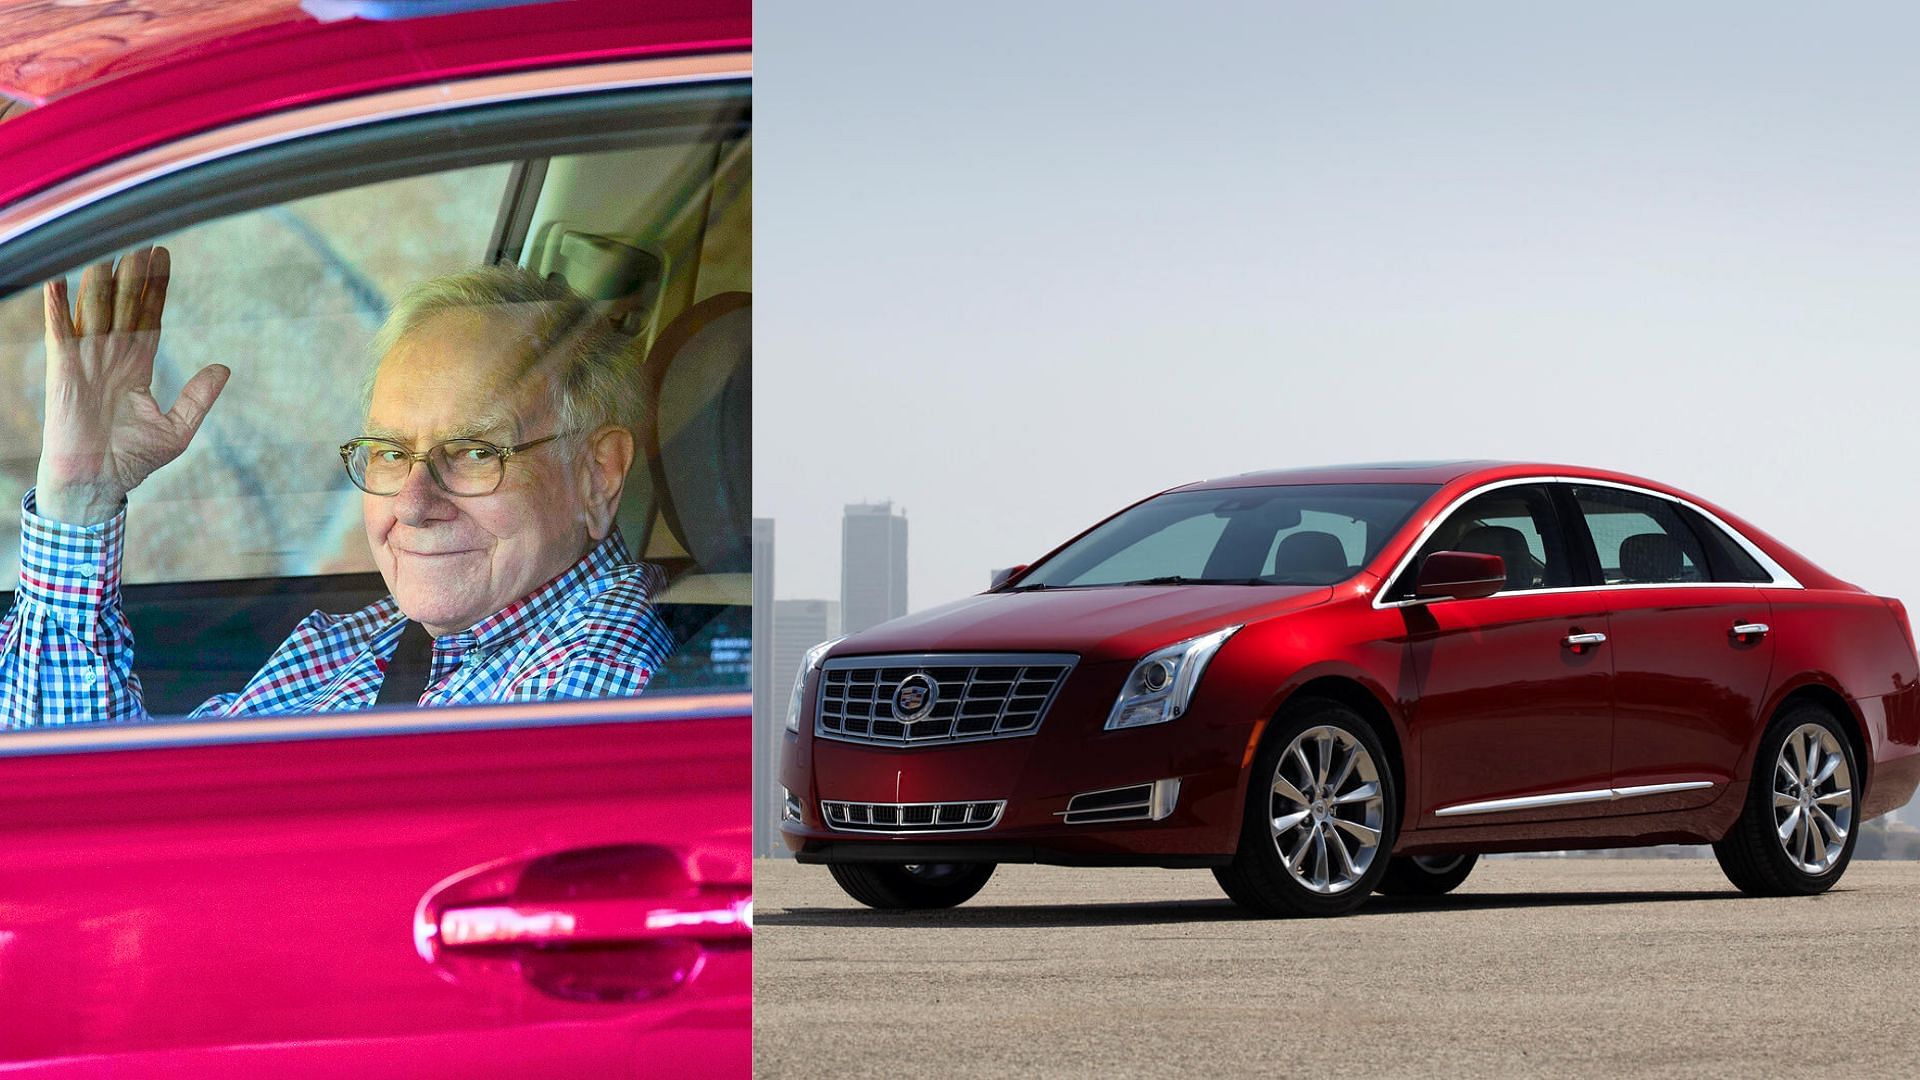 Warren Buffett's Red Cadillac XTS